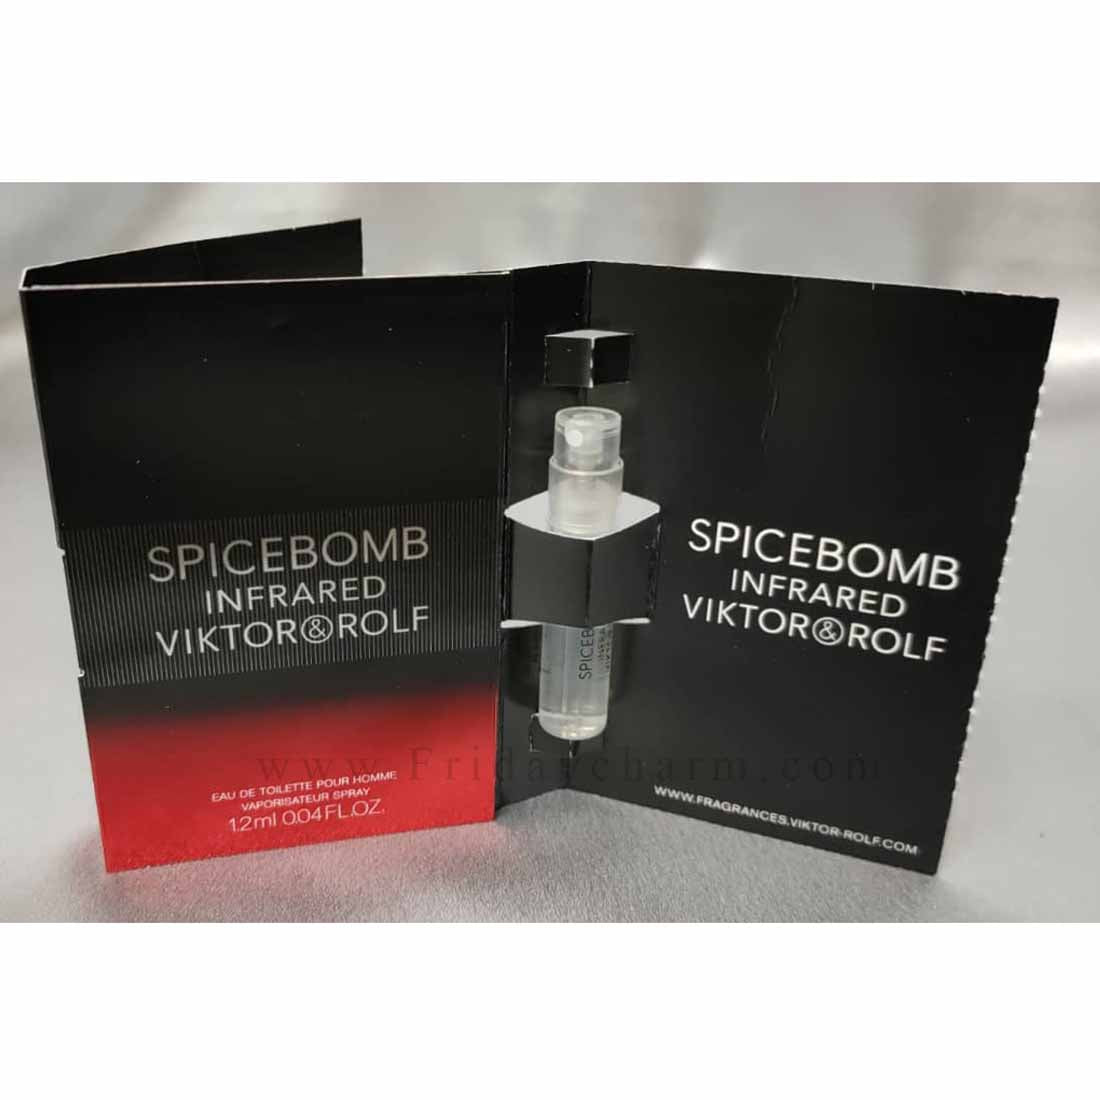 Viktor & Rolf Spicebomb Infrared Eau De Toilette vial -1.2ml